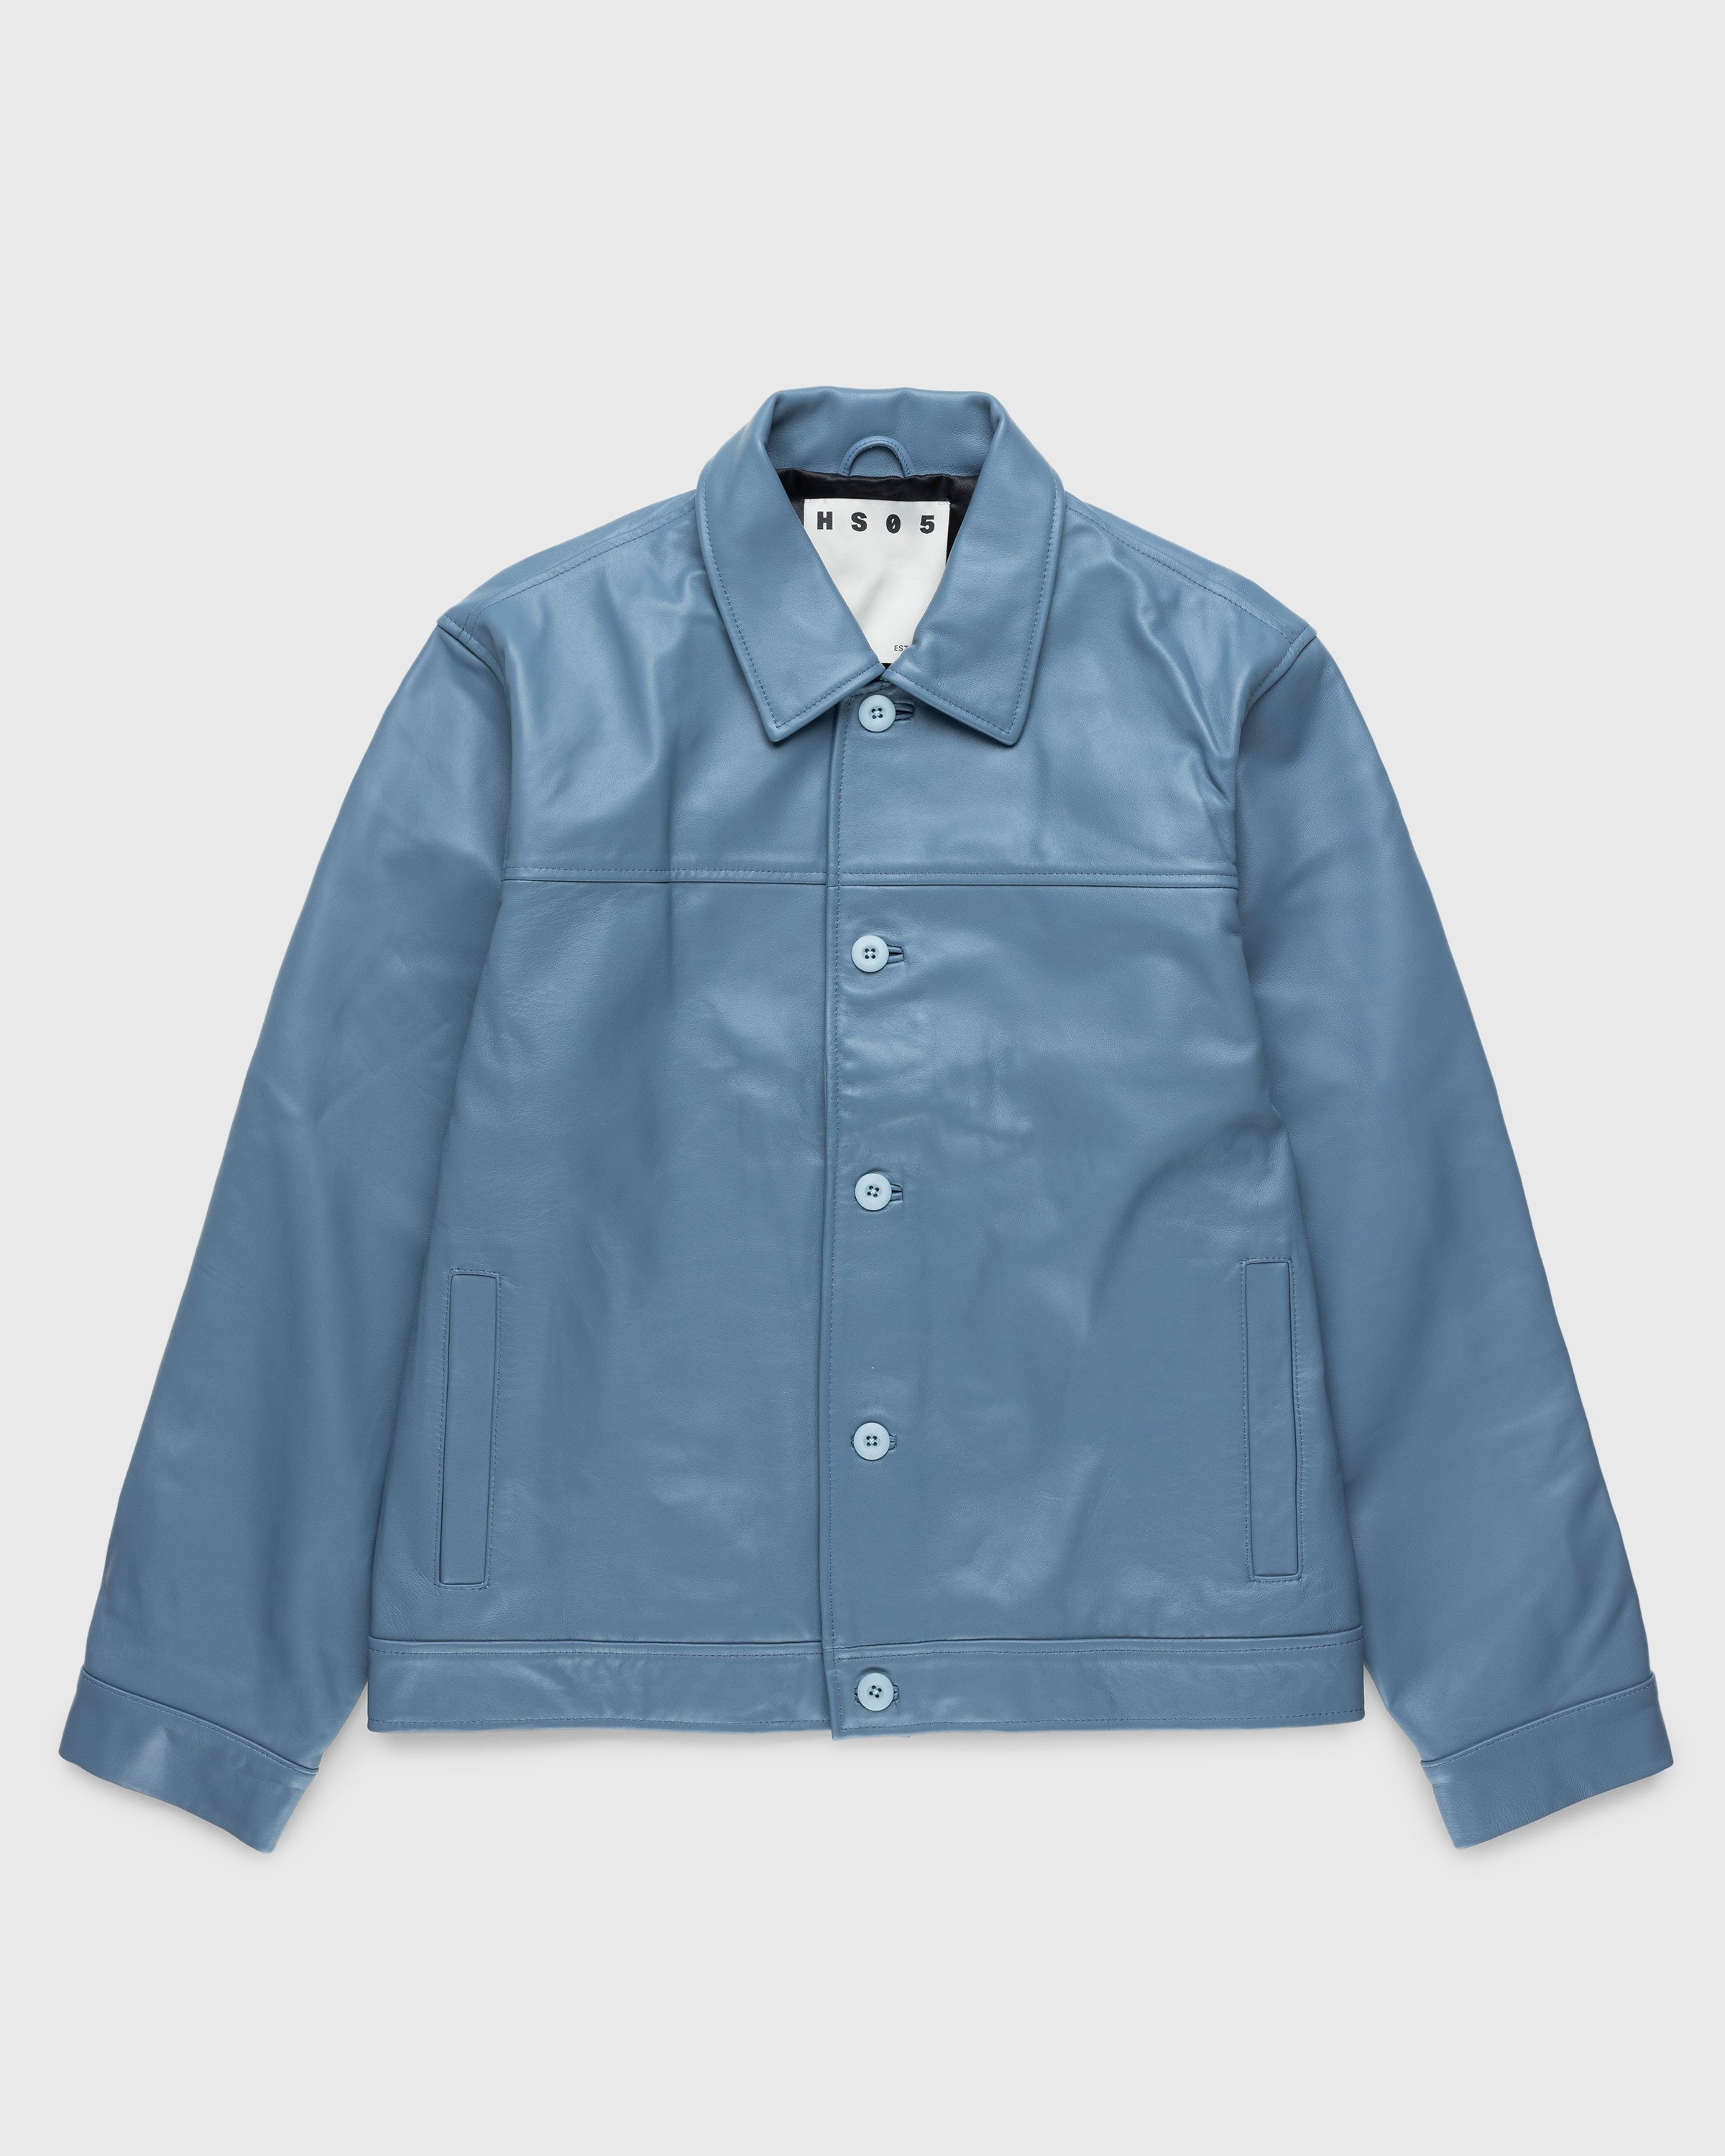 Highsnobiety HS05 - Leather Jacket Blue - Clothing - Blue - Image 1